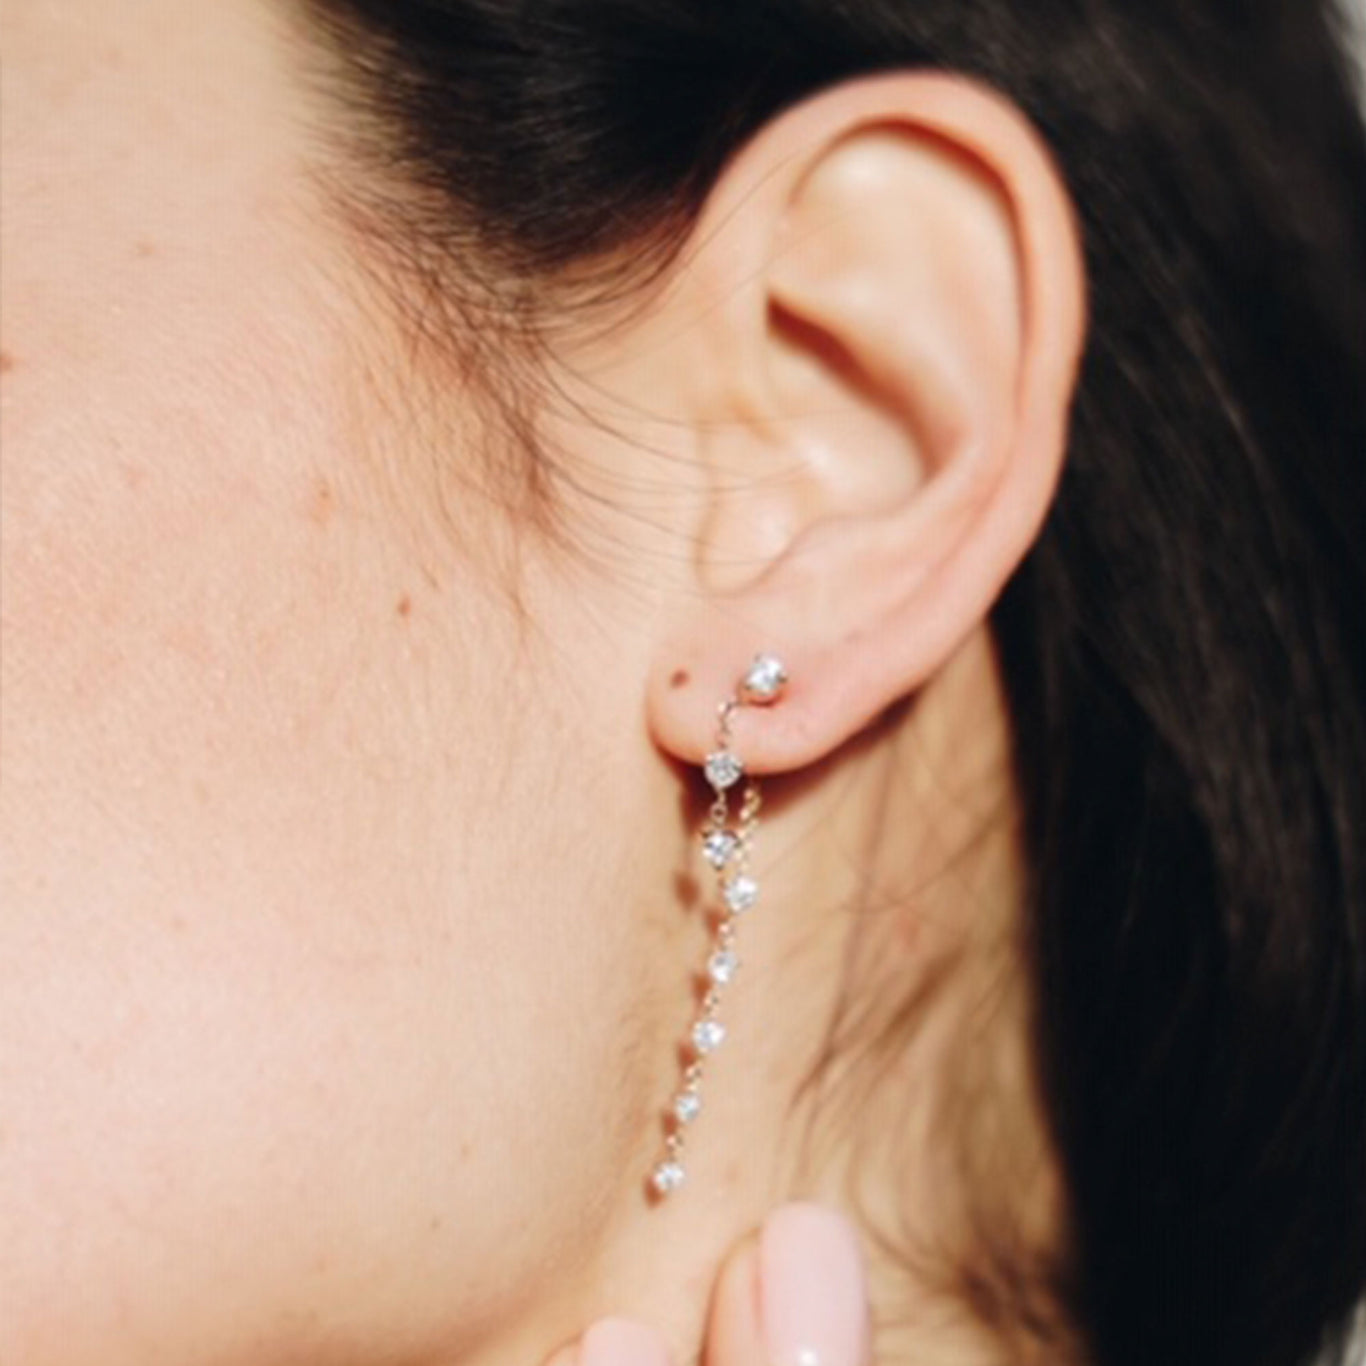 Starstruck Earring shown in rose gold.